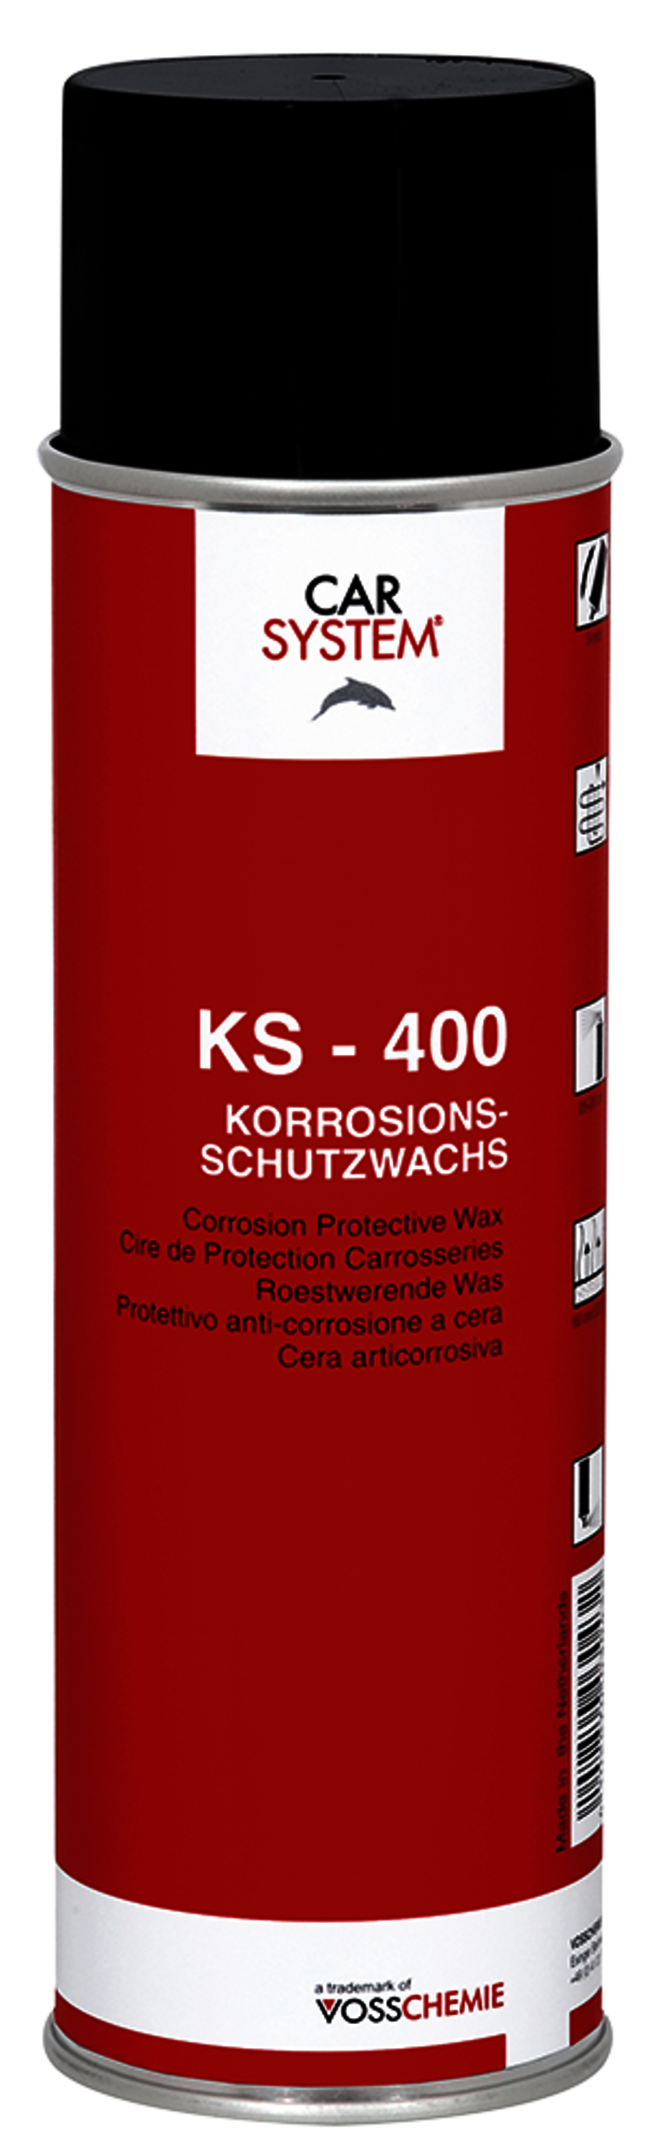 Carsystem KS-400 Korrosionsschutzwachs